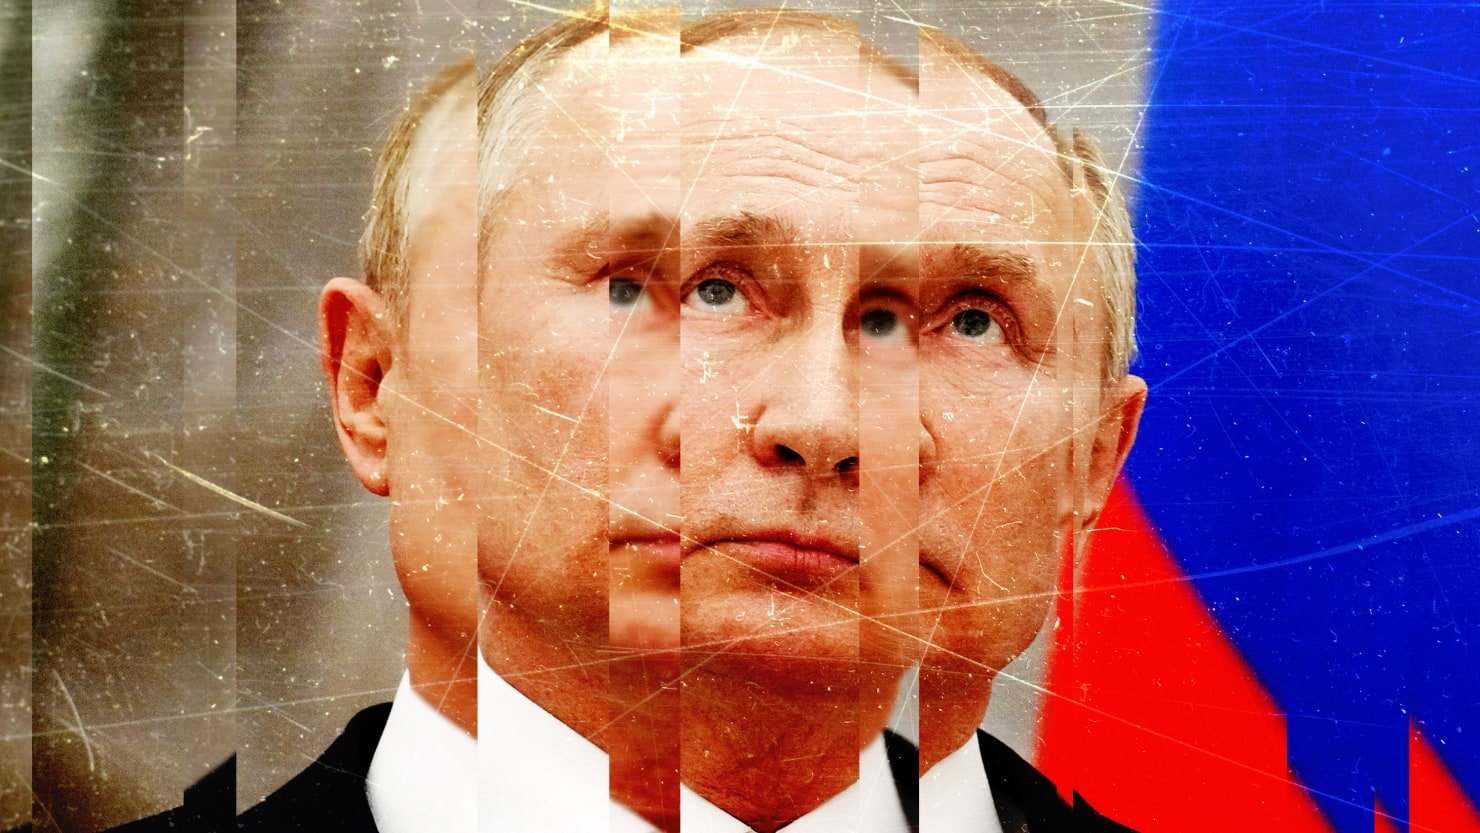 El pueblo ruso puede estar empezando a pensar que Putin está loco